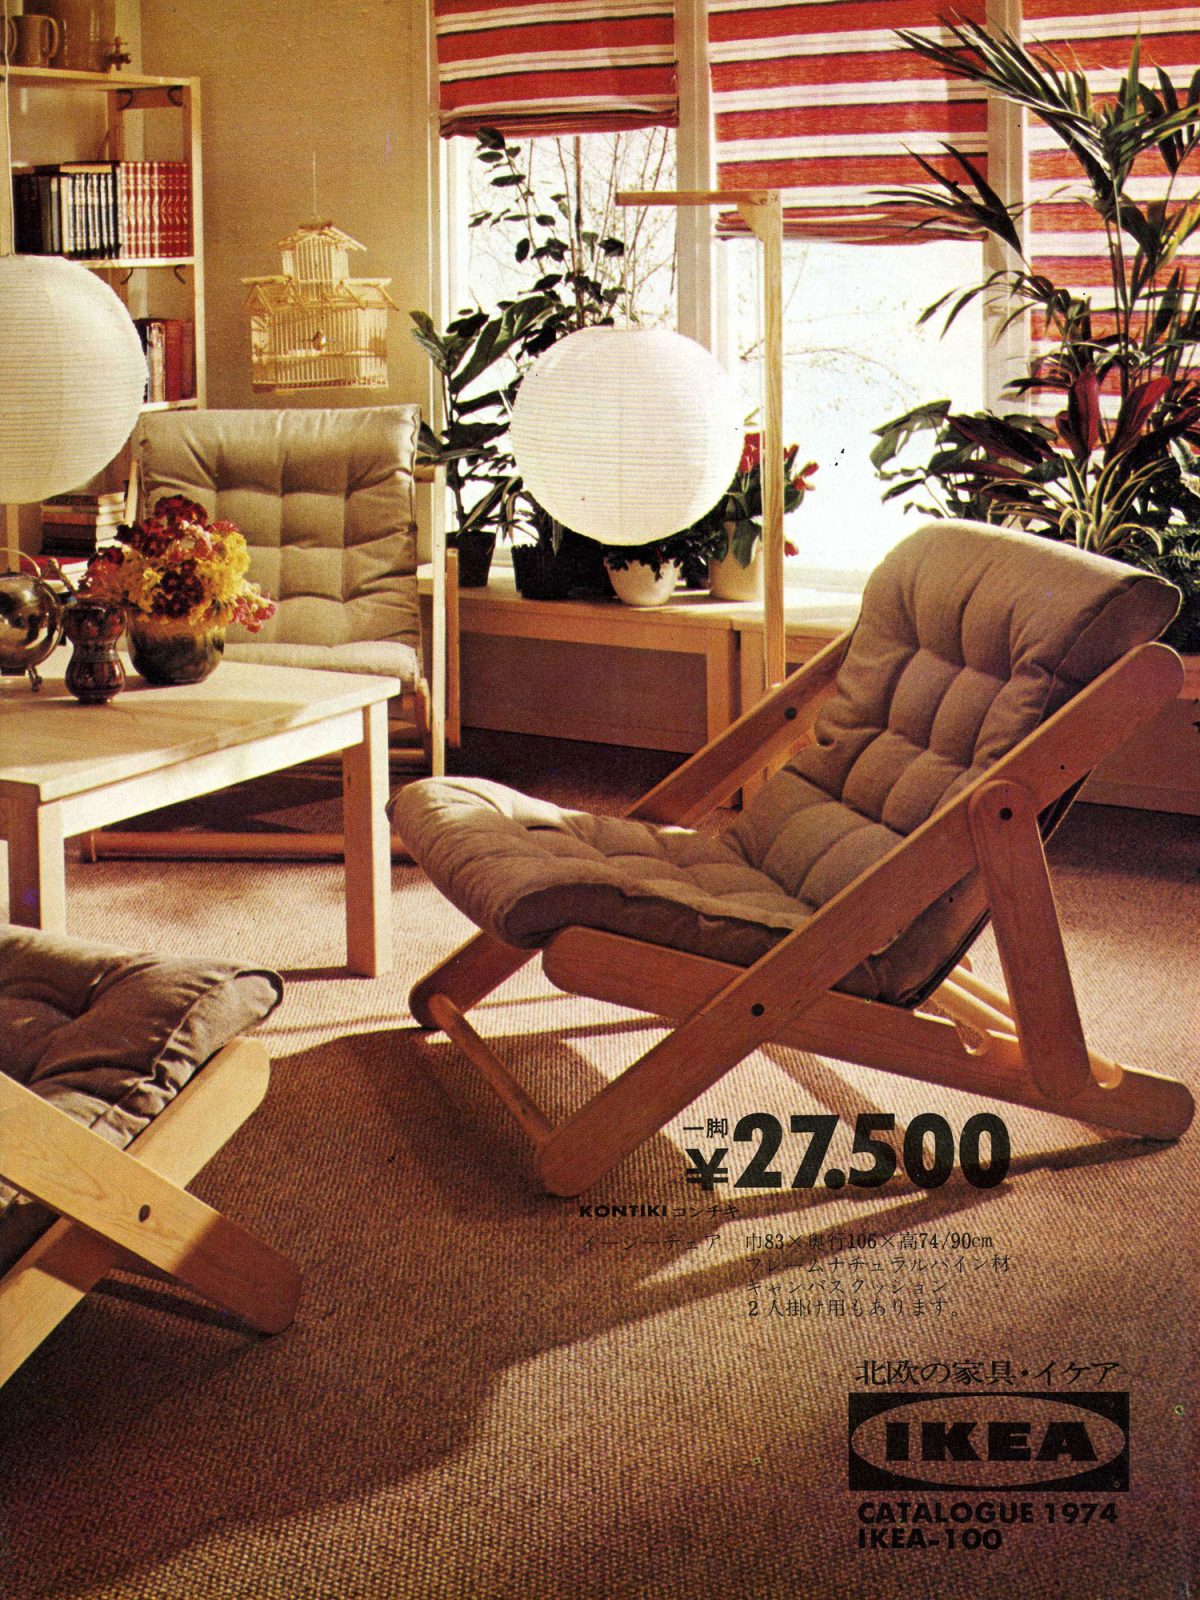 En sida från en japansk IKEA katalog från 1980-talet med en bild av ett vardagsrum dominerat av två KON-TIKI-stolar.